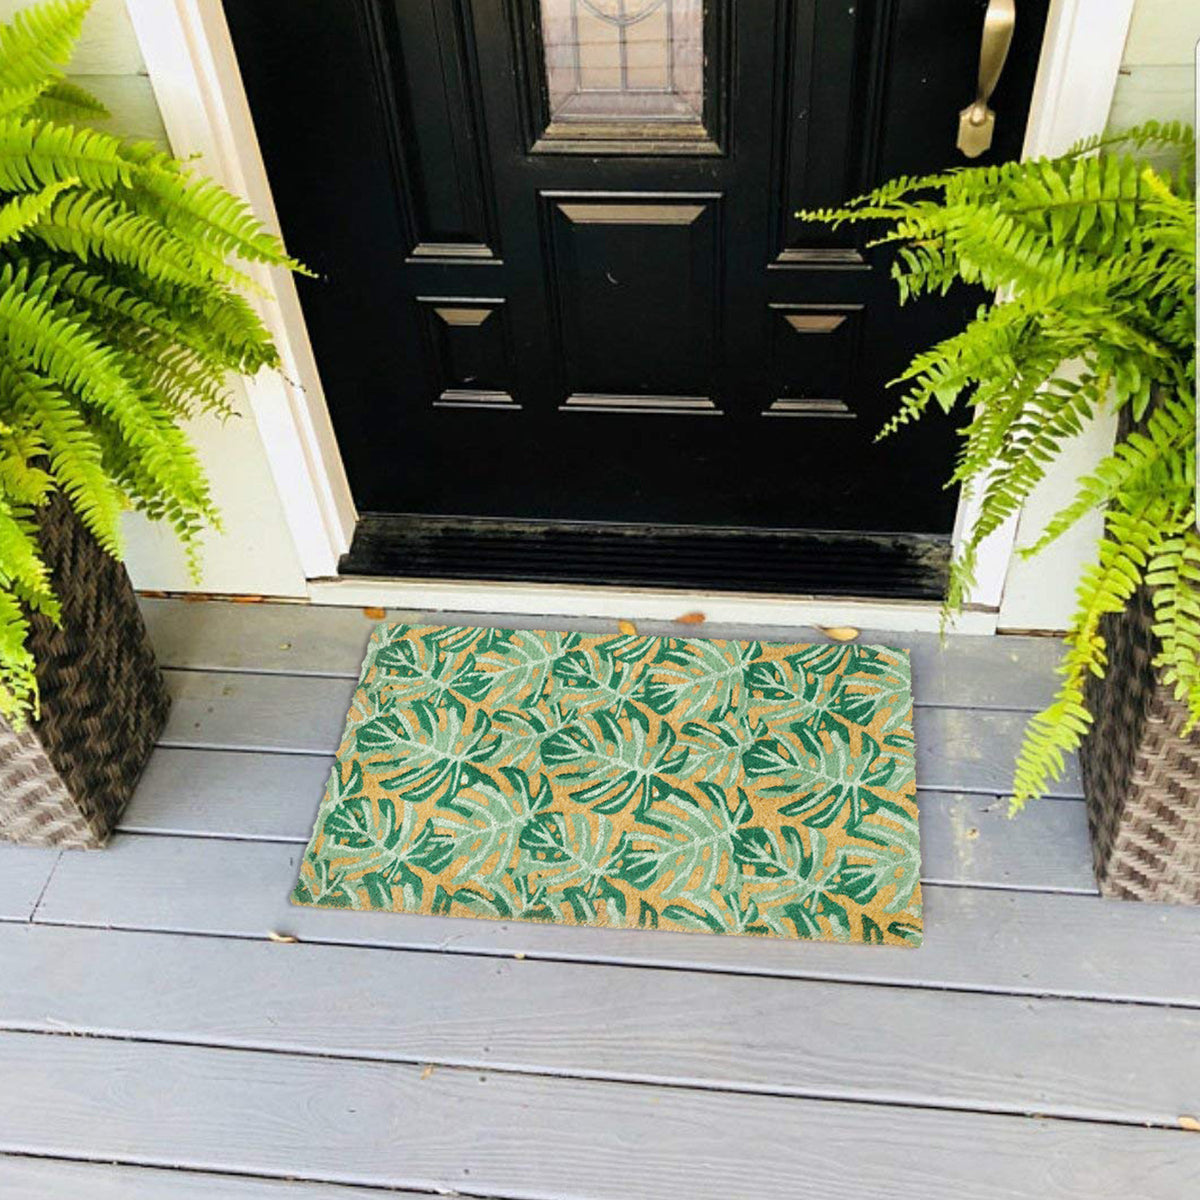 OnlyMat Fern Leaves Green Design Natural Printed Coir Floor Mat